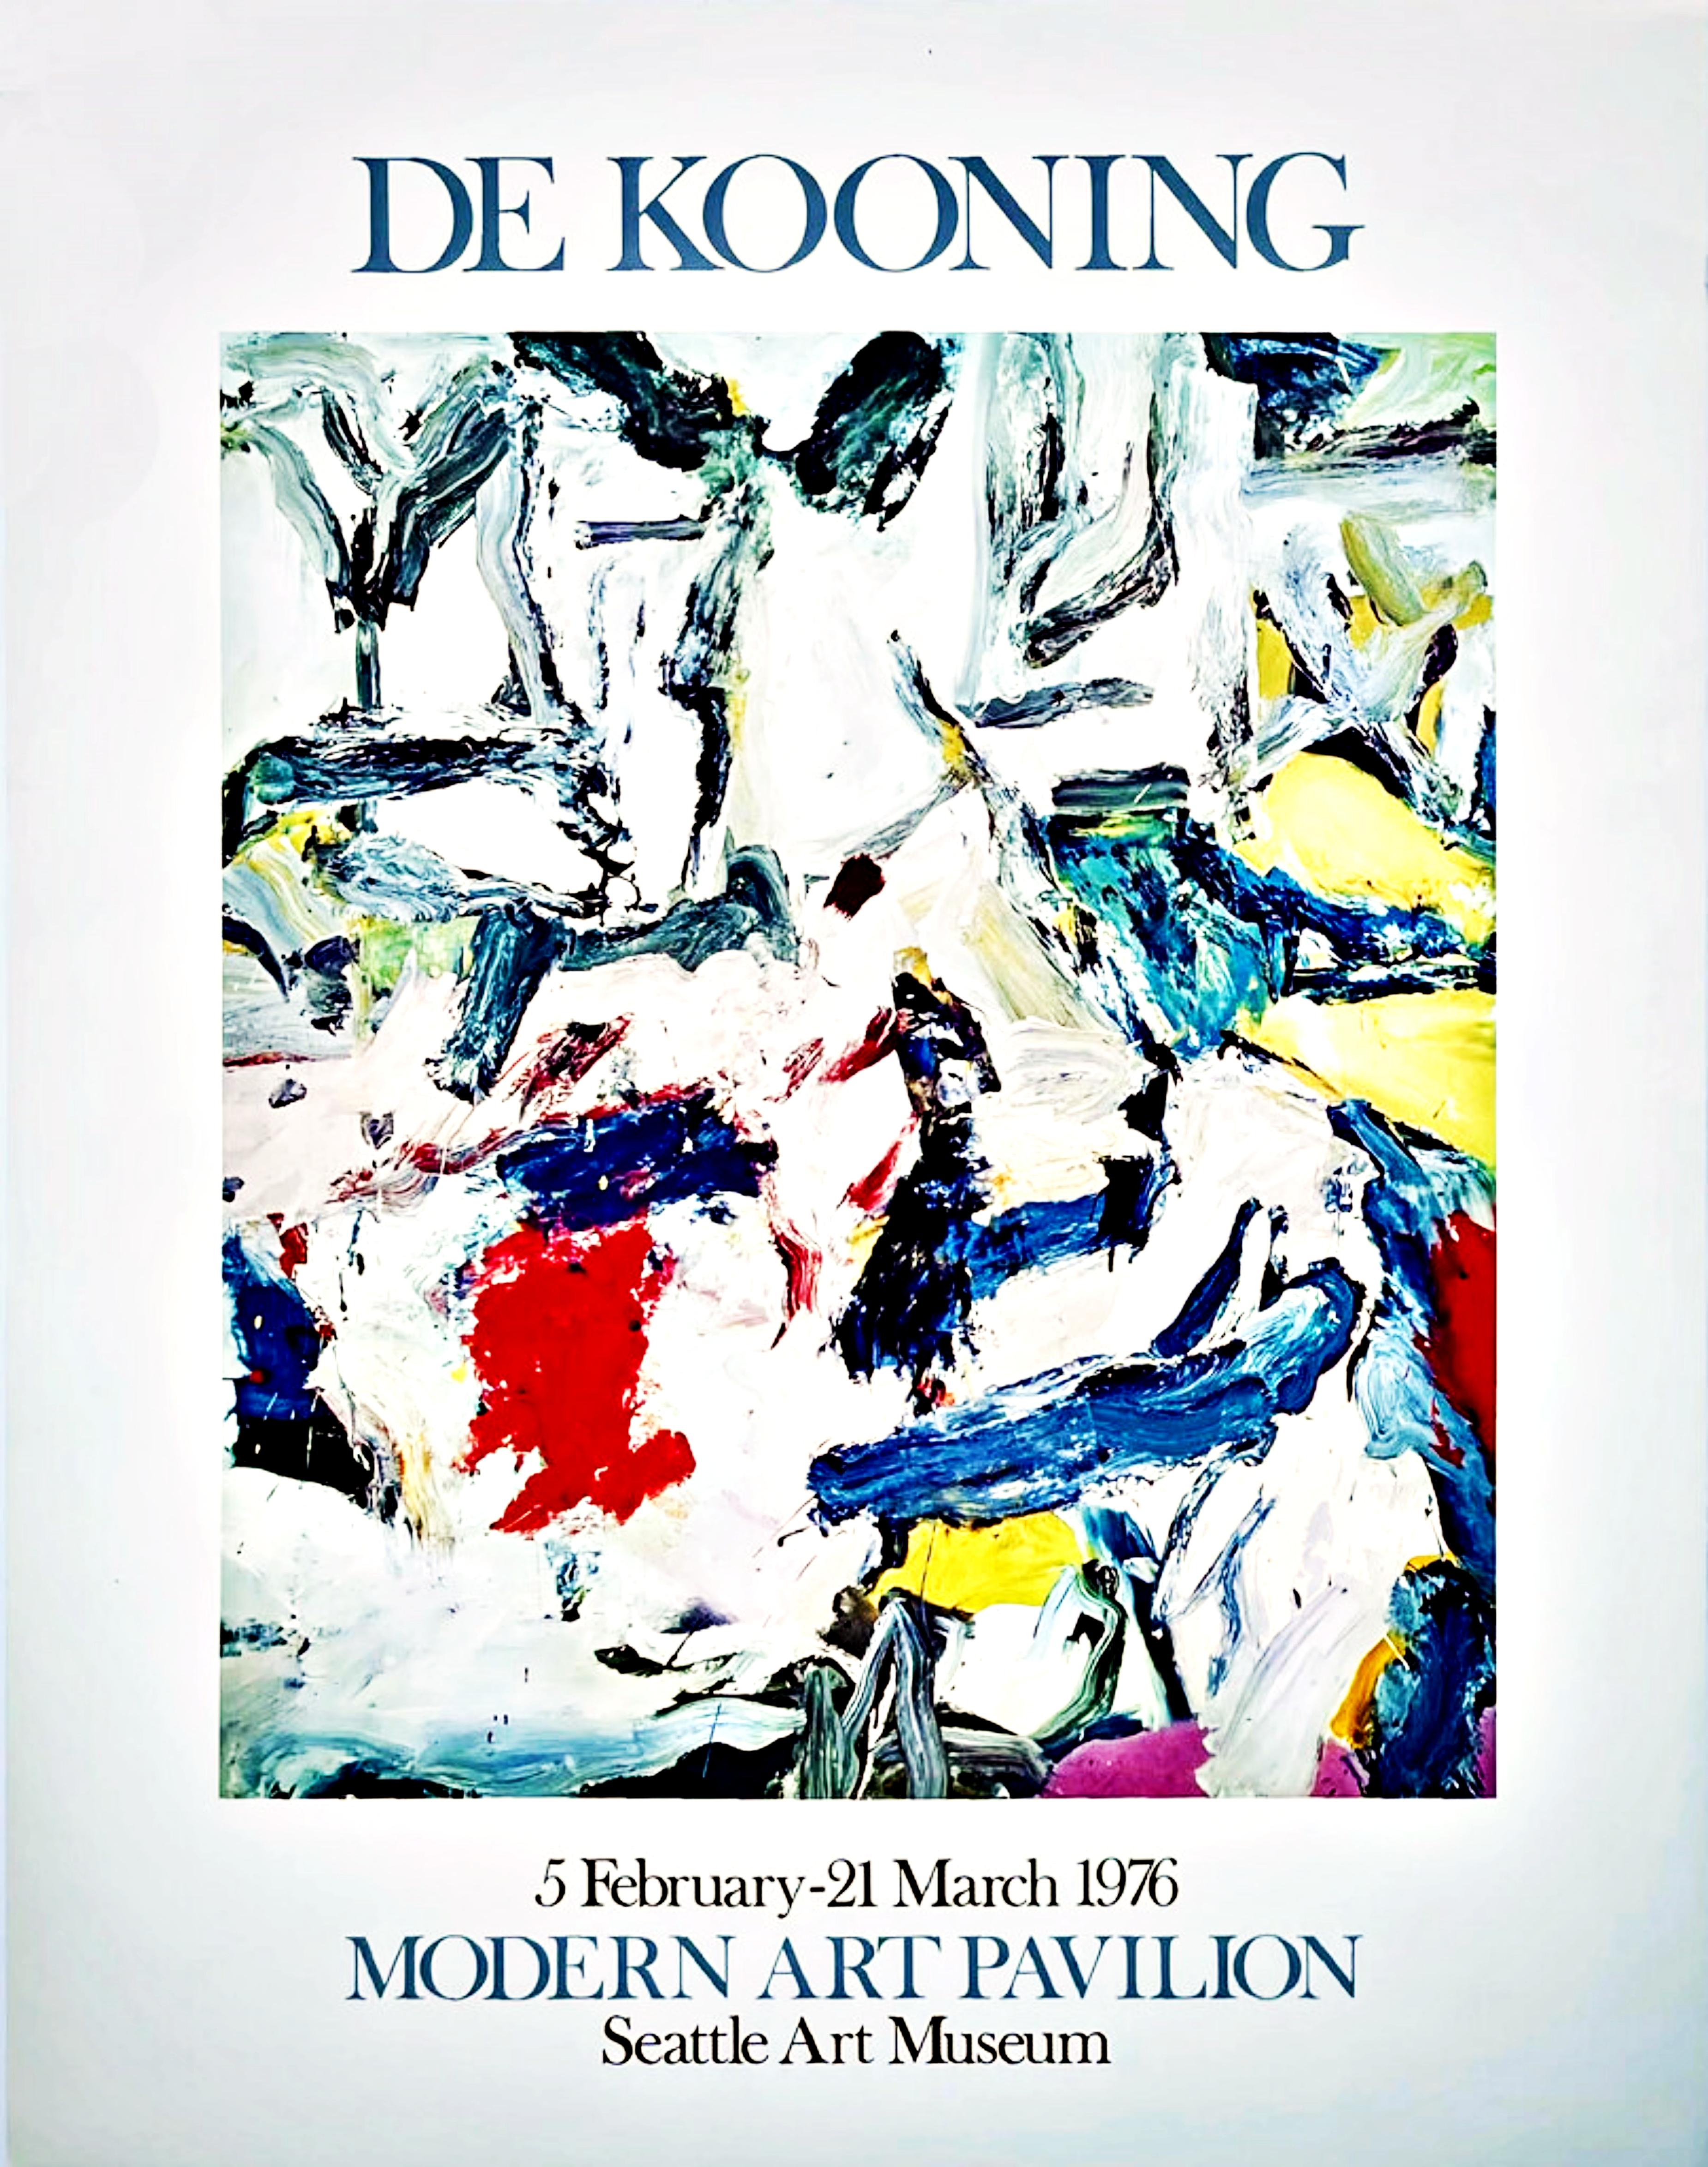 De Kooning at the Modern Art Pavillion - Print by Willem de Kooning